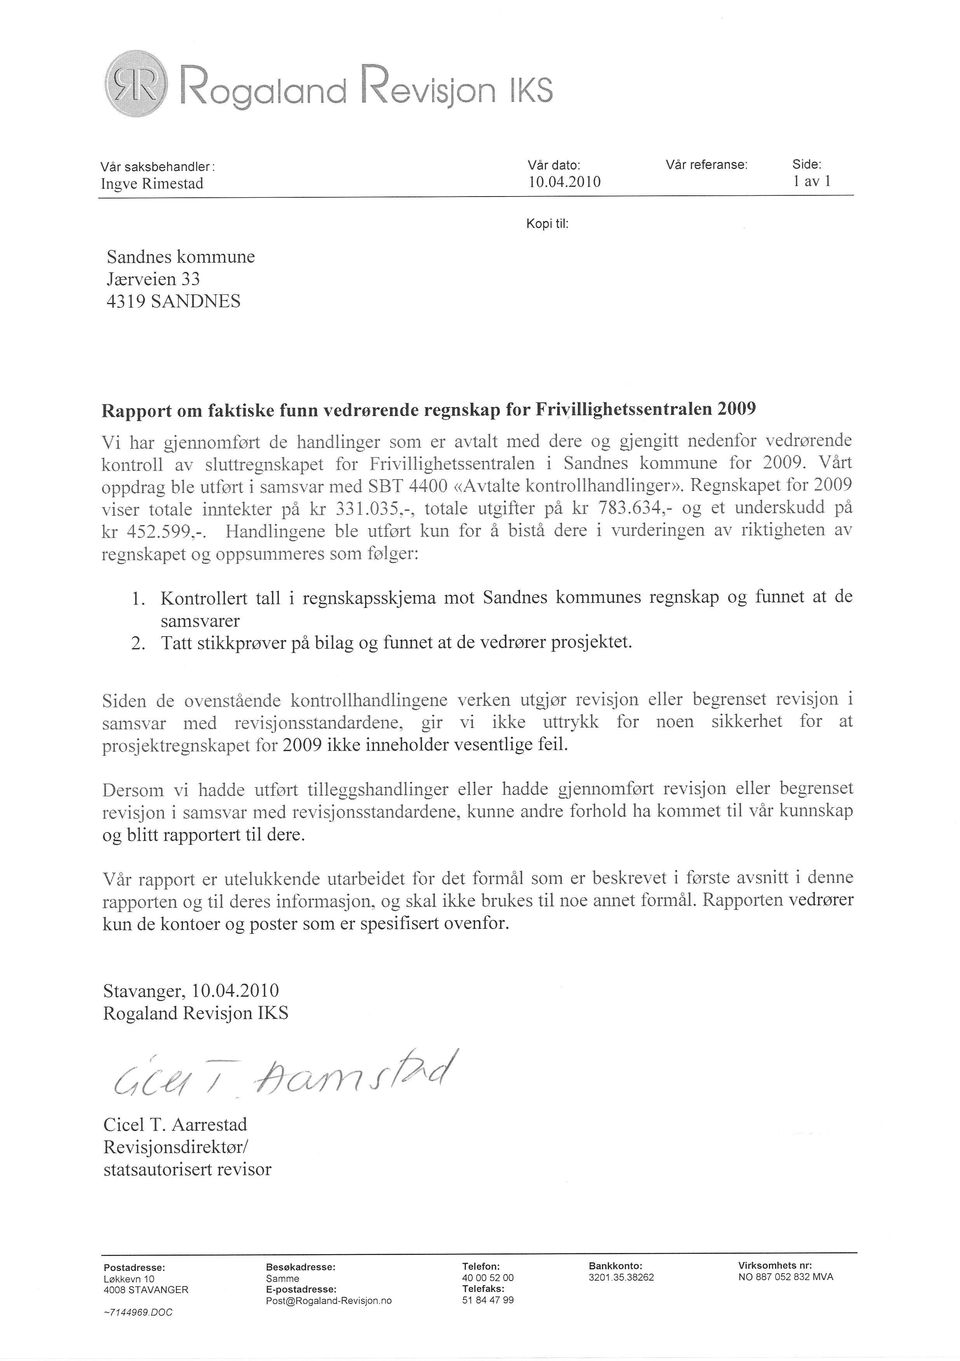 avtalt med dere og gfengitt nedenfbr vedrørende kontroll av sluttregnskapet for Frivillighetssentralen i Sandnes kommune for 2009.